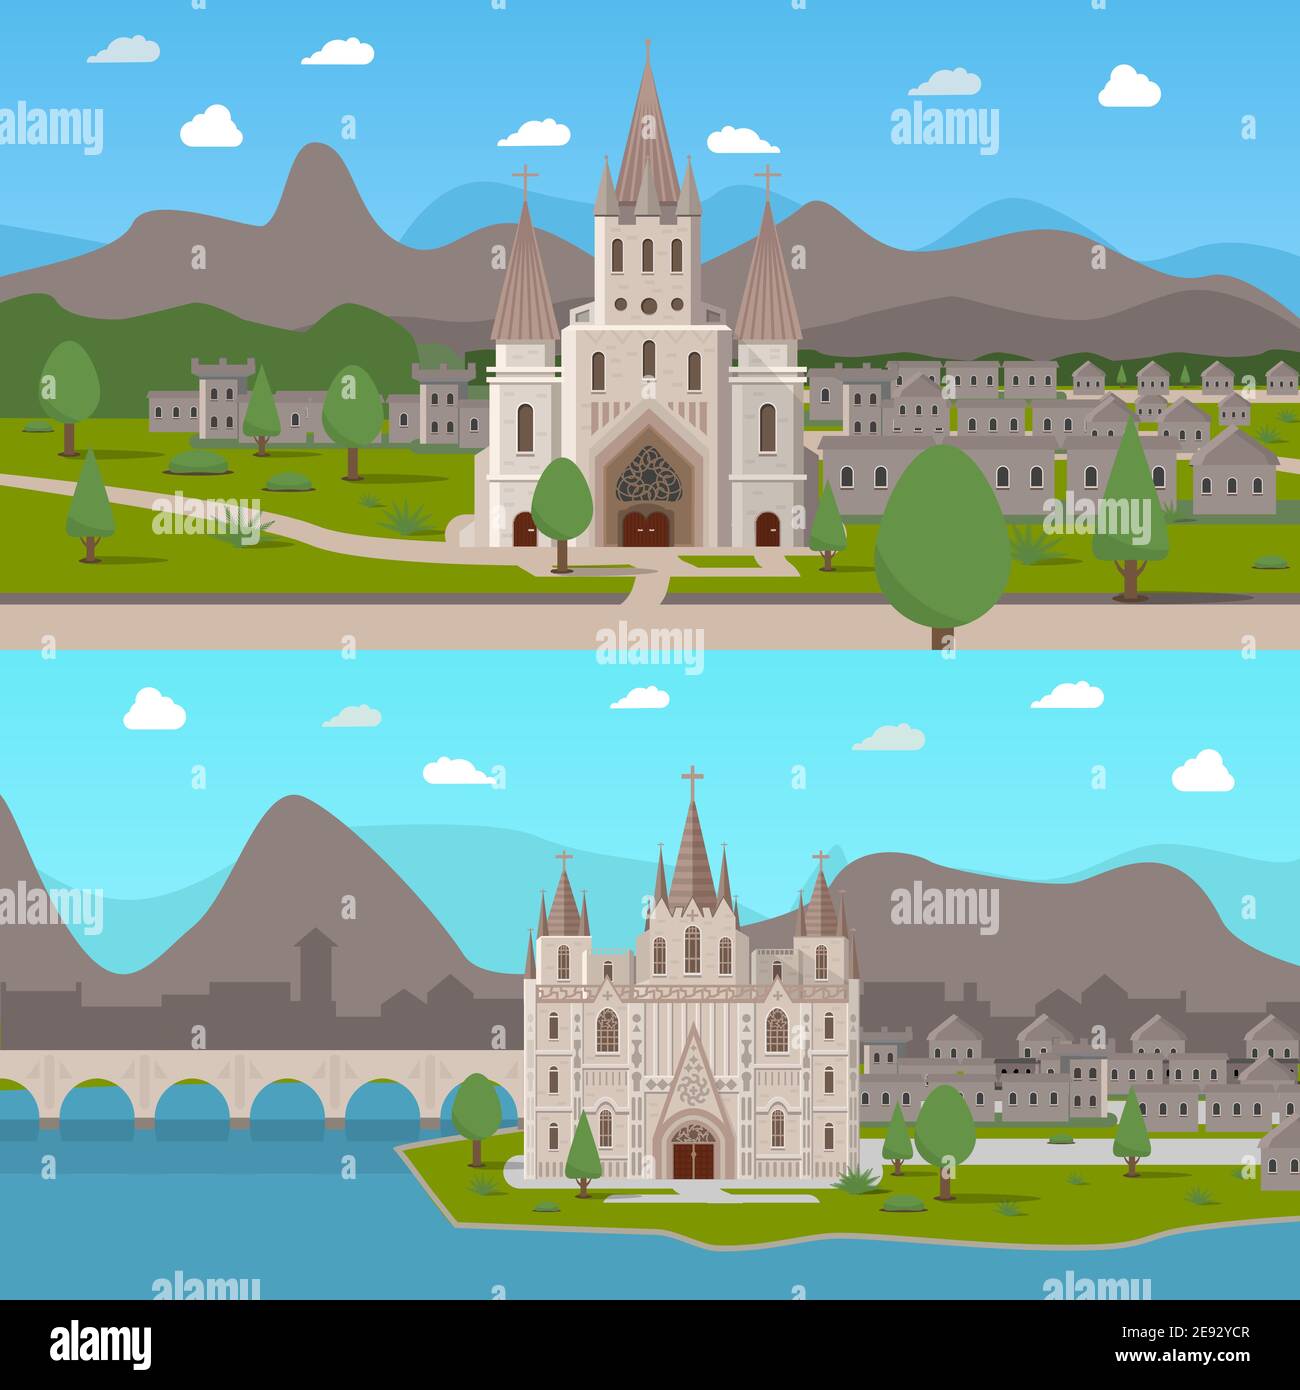 Deux compositions horizontales avec des temples gothiques dans le style de dessin animé illustration vectorielle plate de fond de ville médiévale Illustration de Vecteur